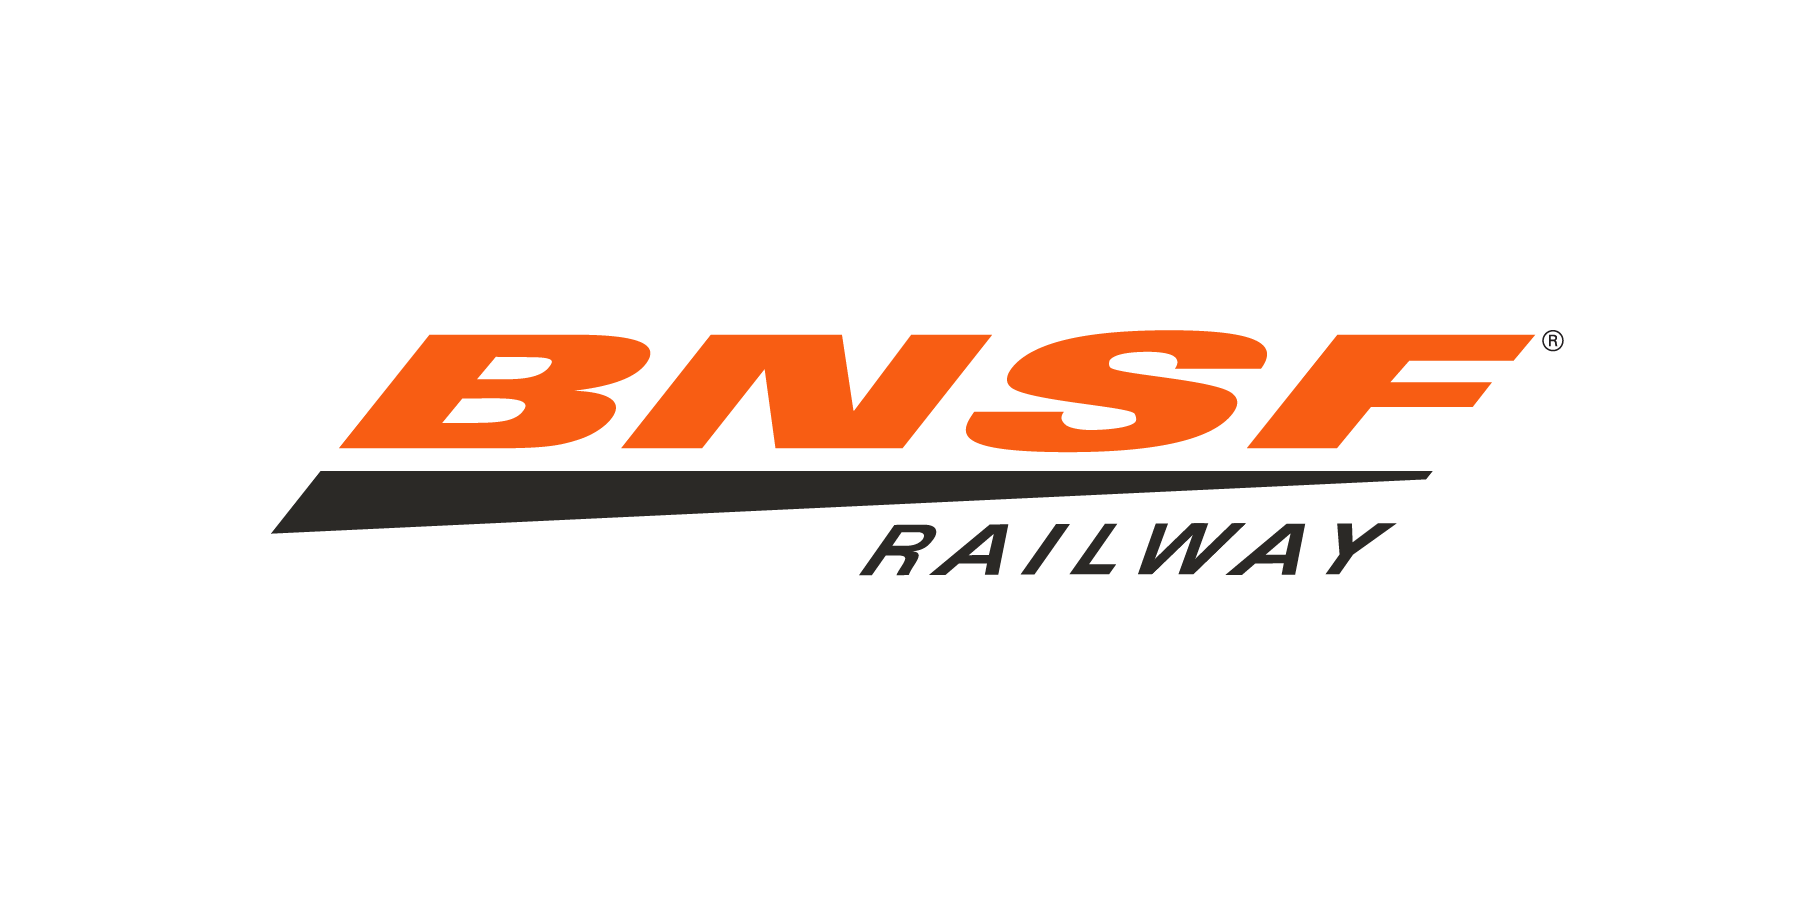 BNSF Railway Logo for online